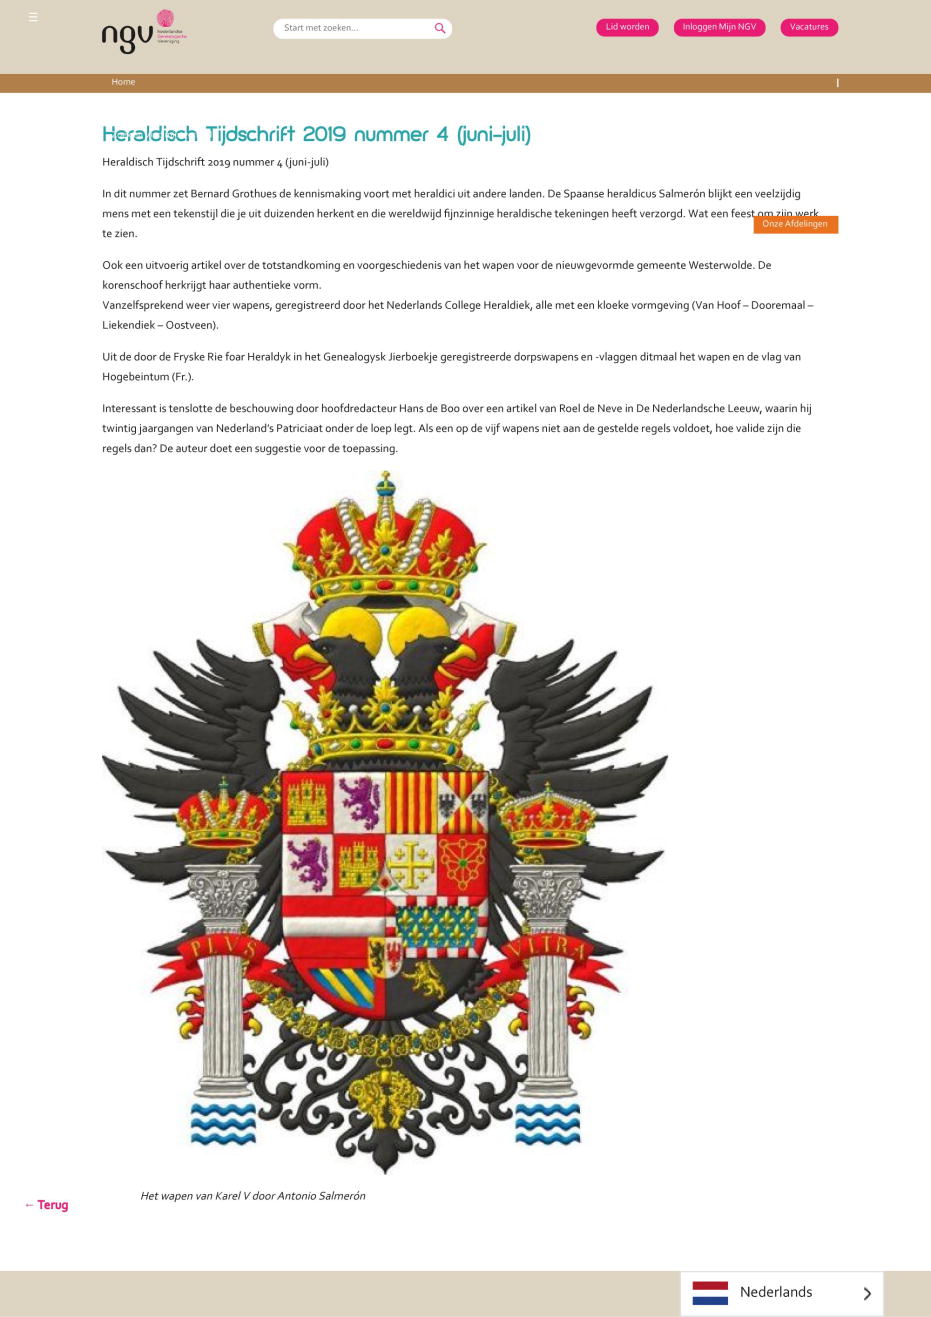 Publicado en su web: Revista peridica para el estudio de los escudos de armas